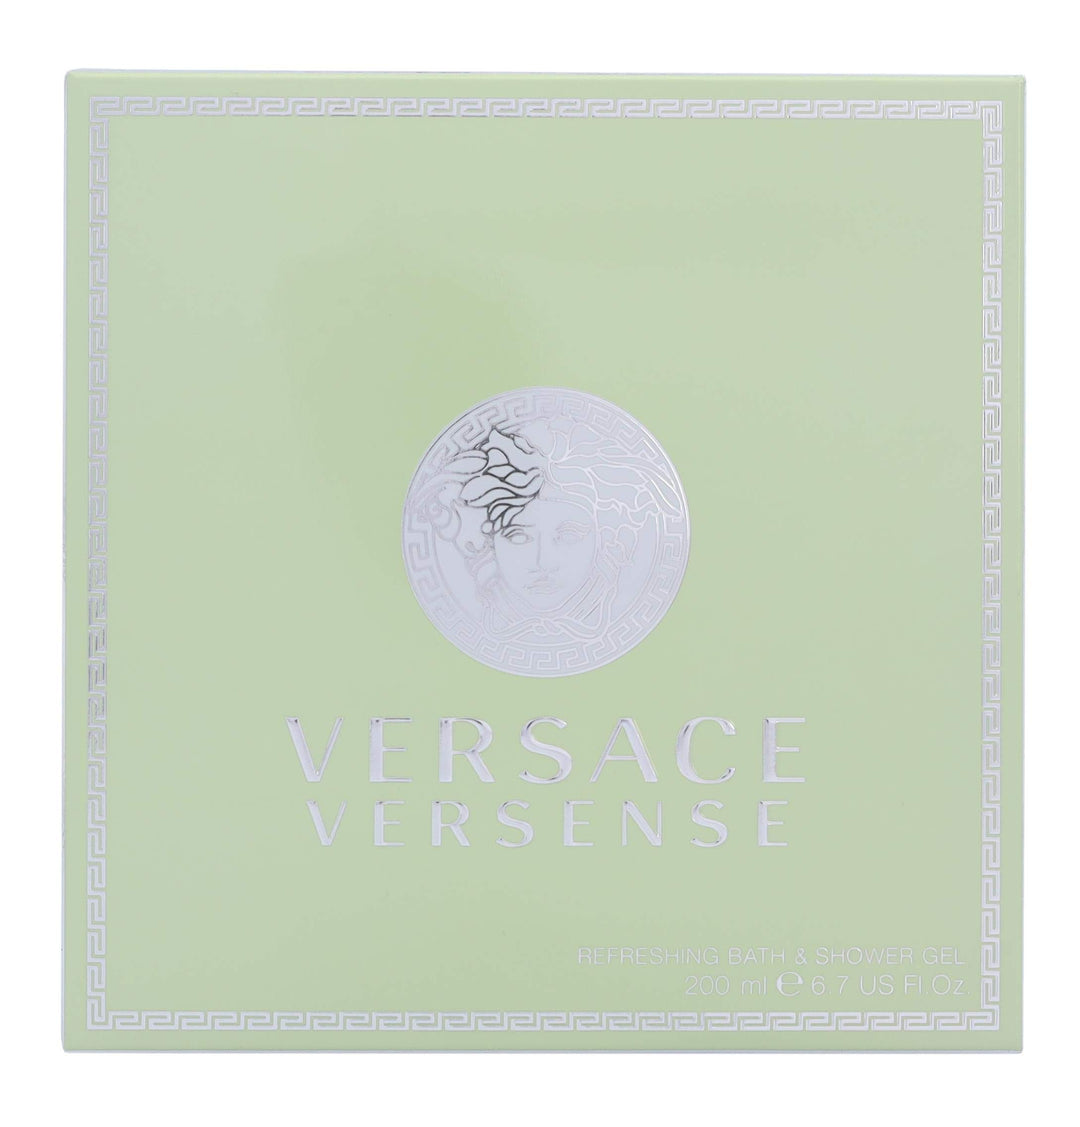 VERSACE  Versense Perfumed Shower Gel 200 ml